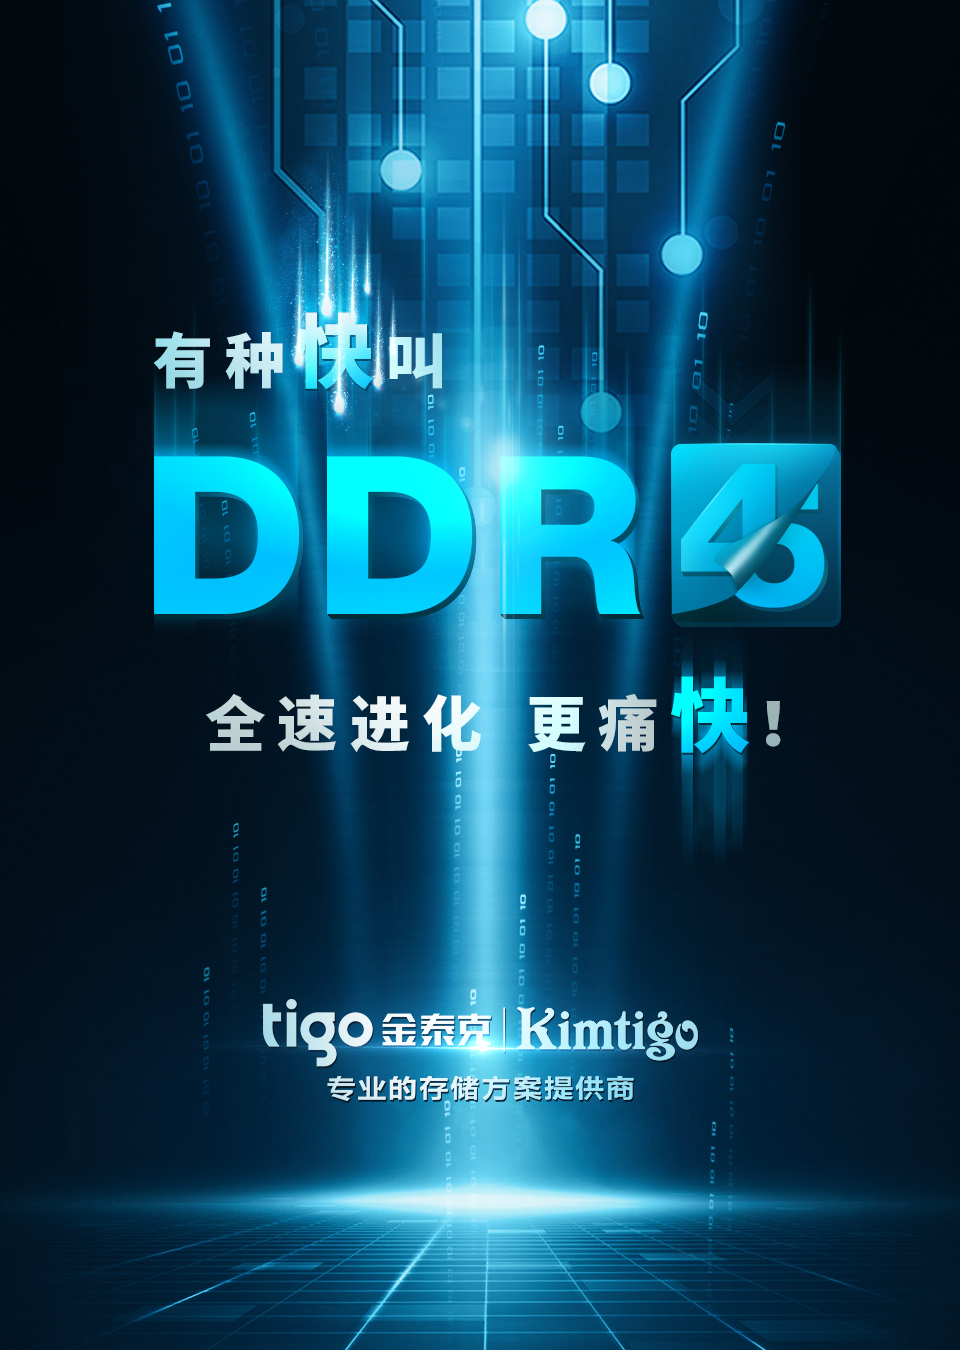 DDR5.jpg